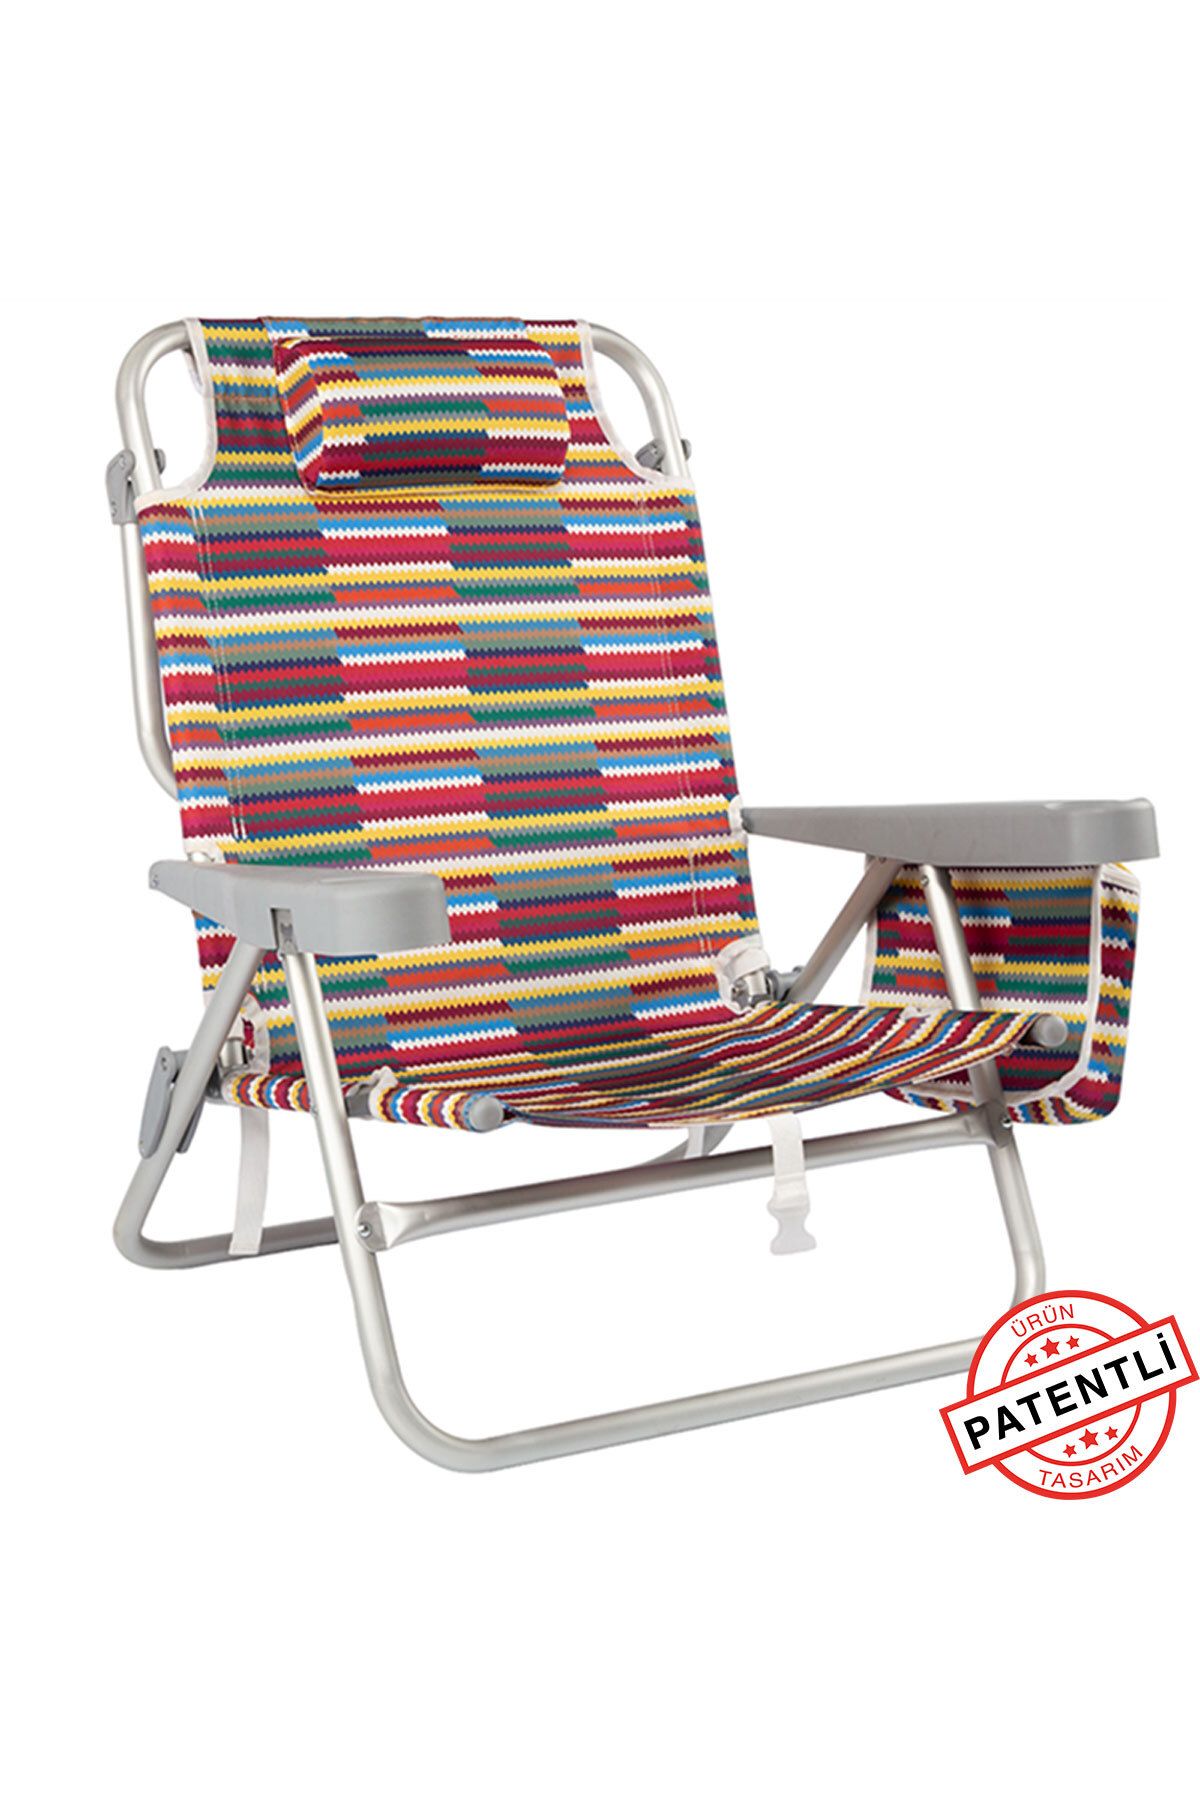 Funky Chairs Beach Star Alüminyum 5 Pozisyon Portatif Soğutucu Çantalı Şezlong Plaj Sandalyesi